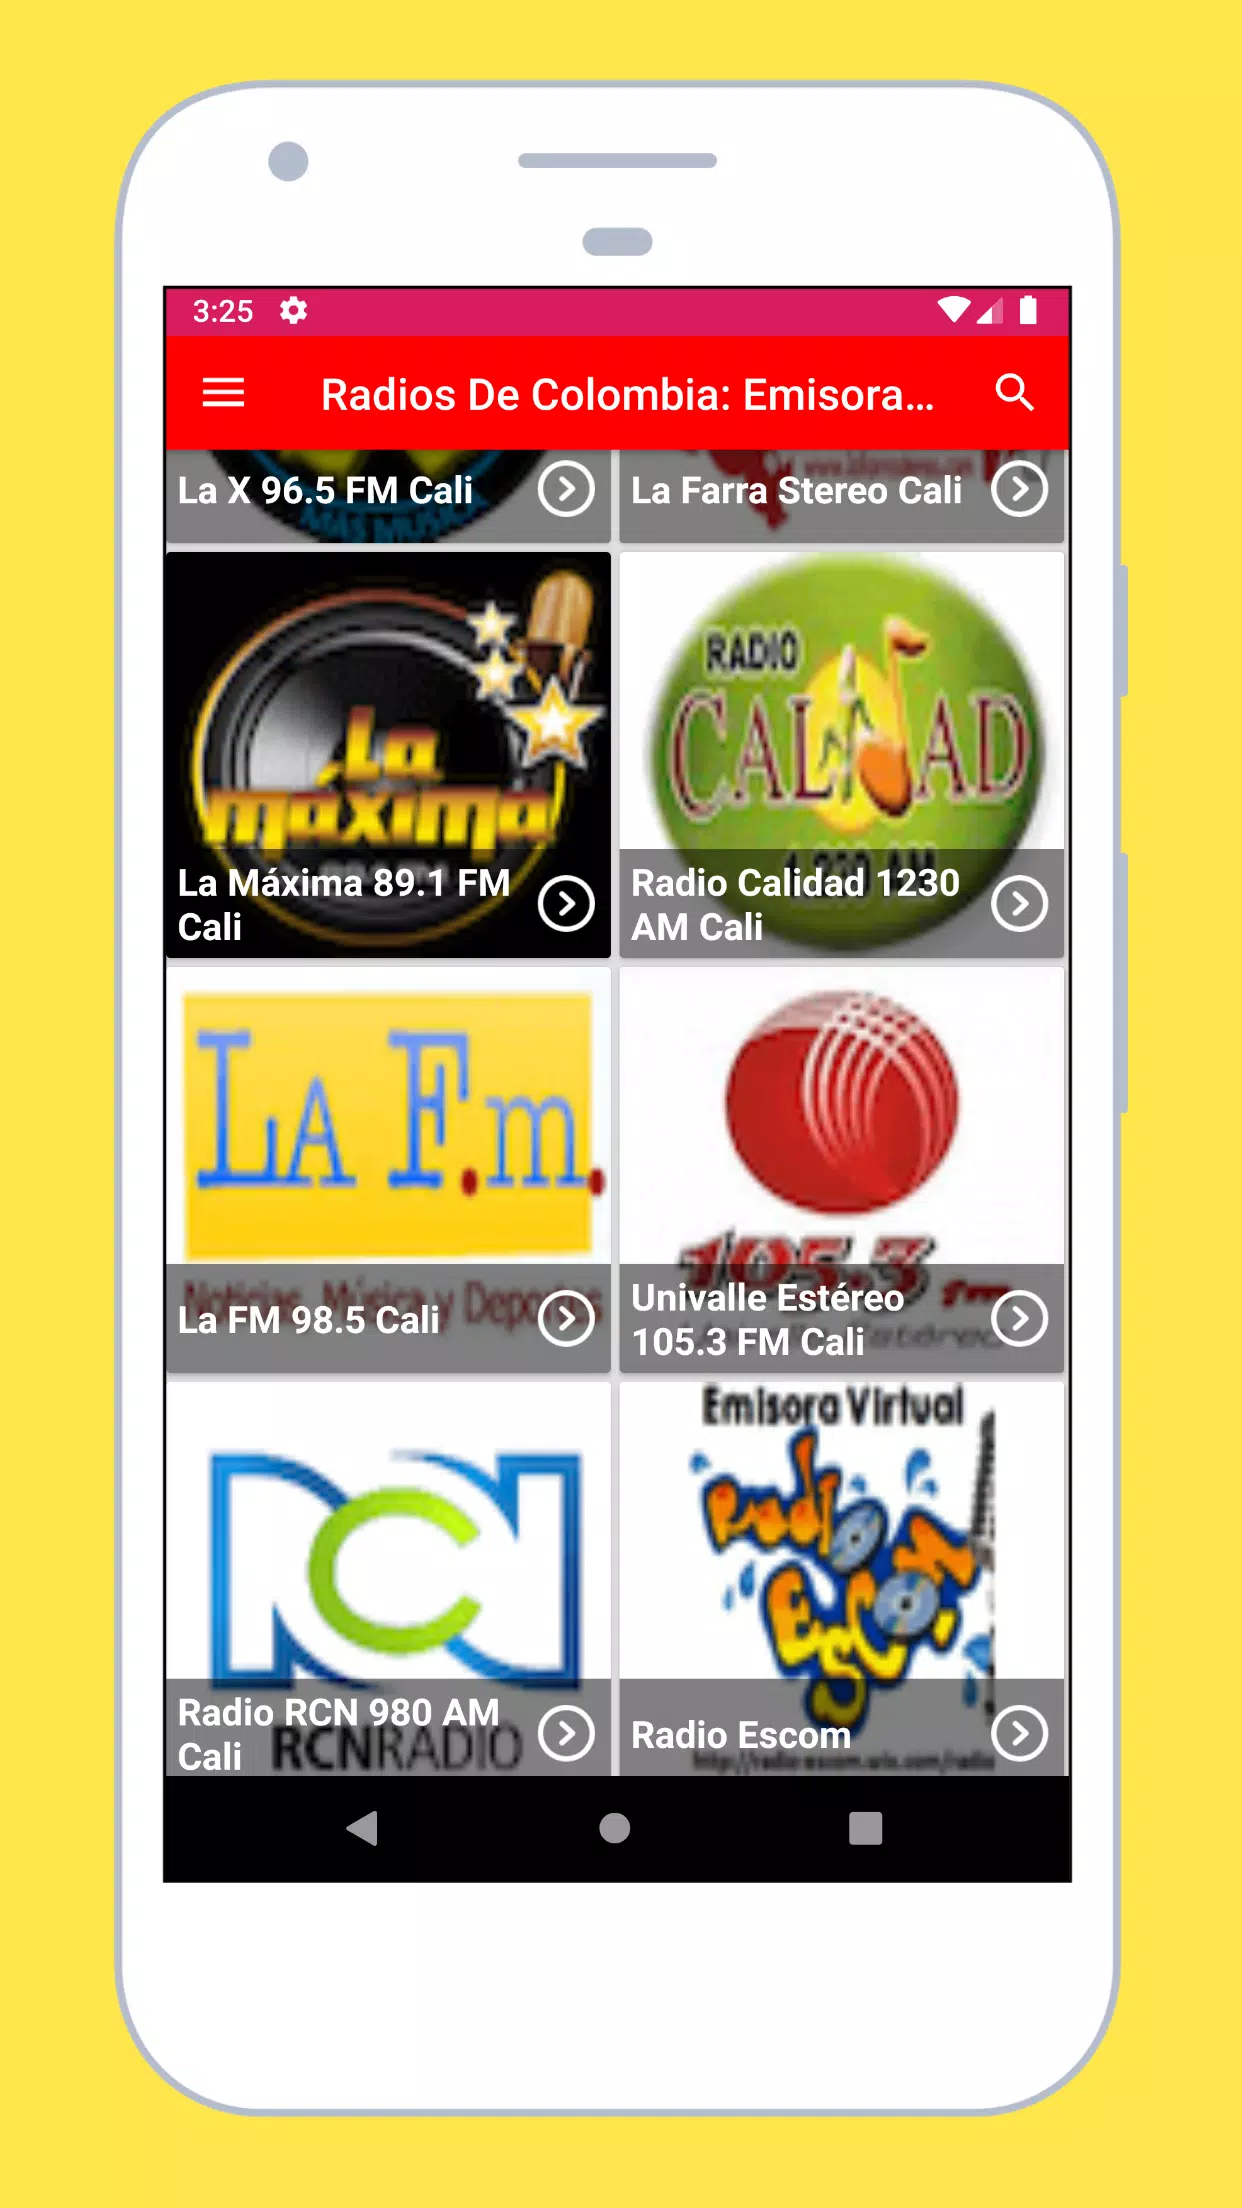 Radios De Colombia: Emisoras Colombianas En Vivo for Android - APK Download